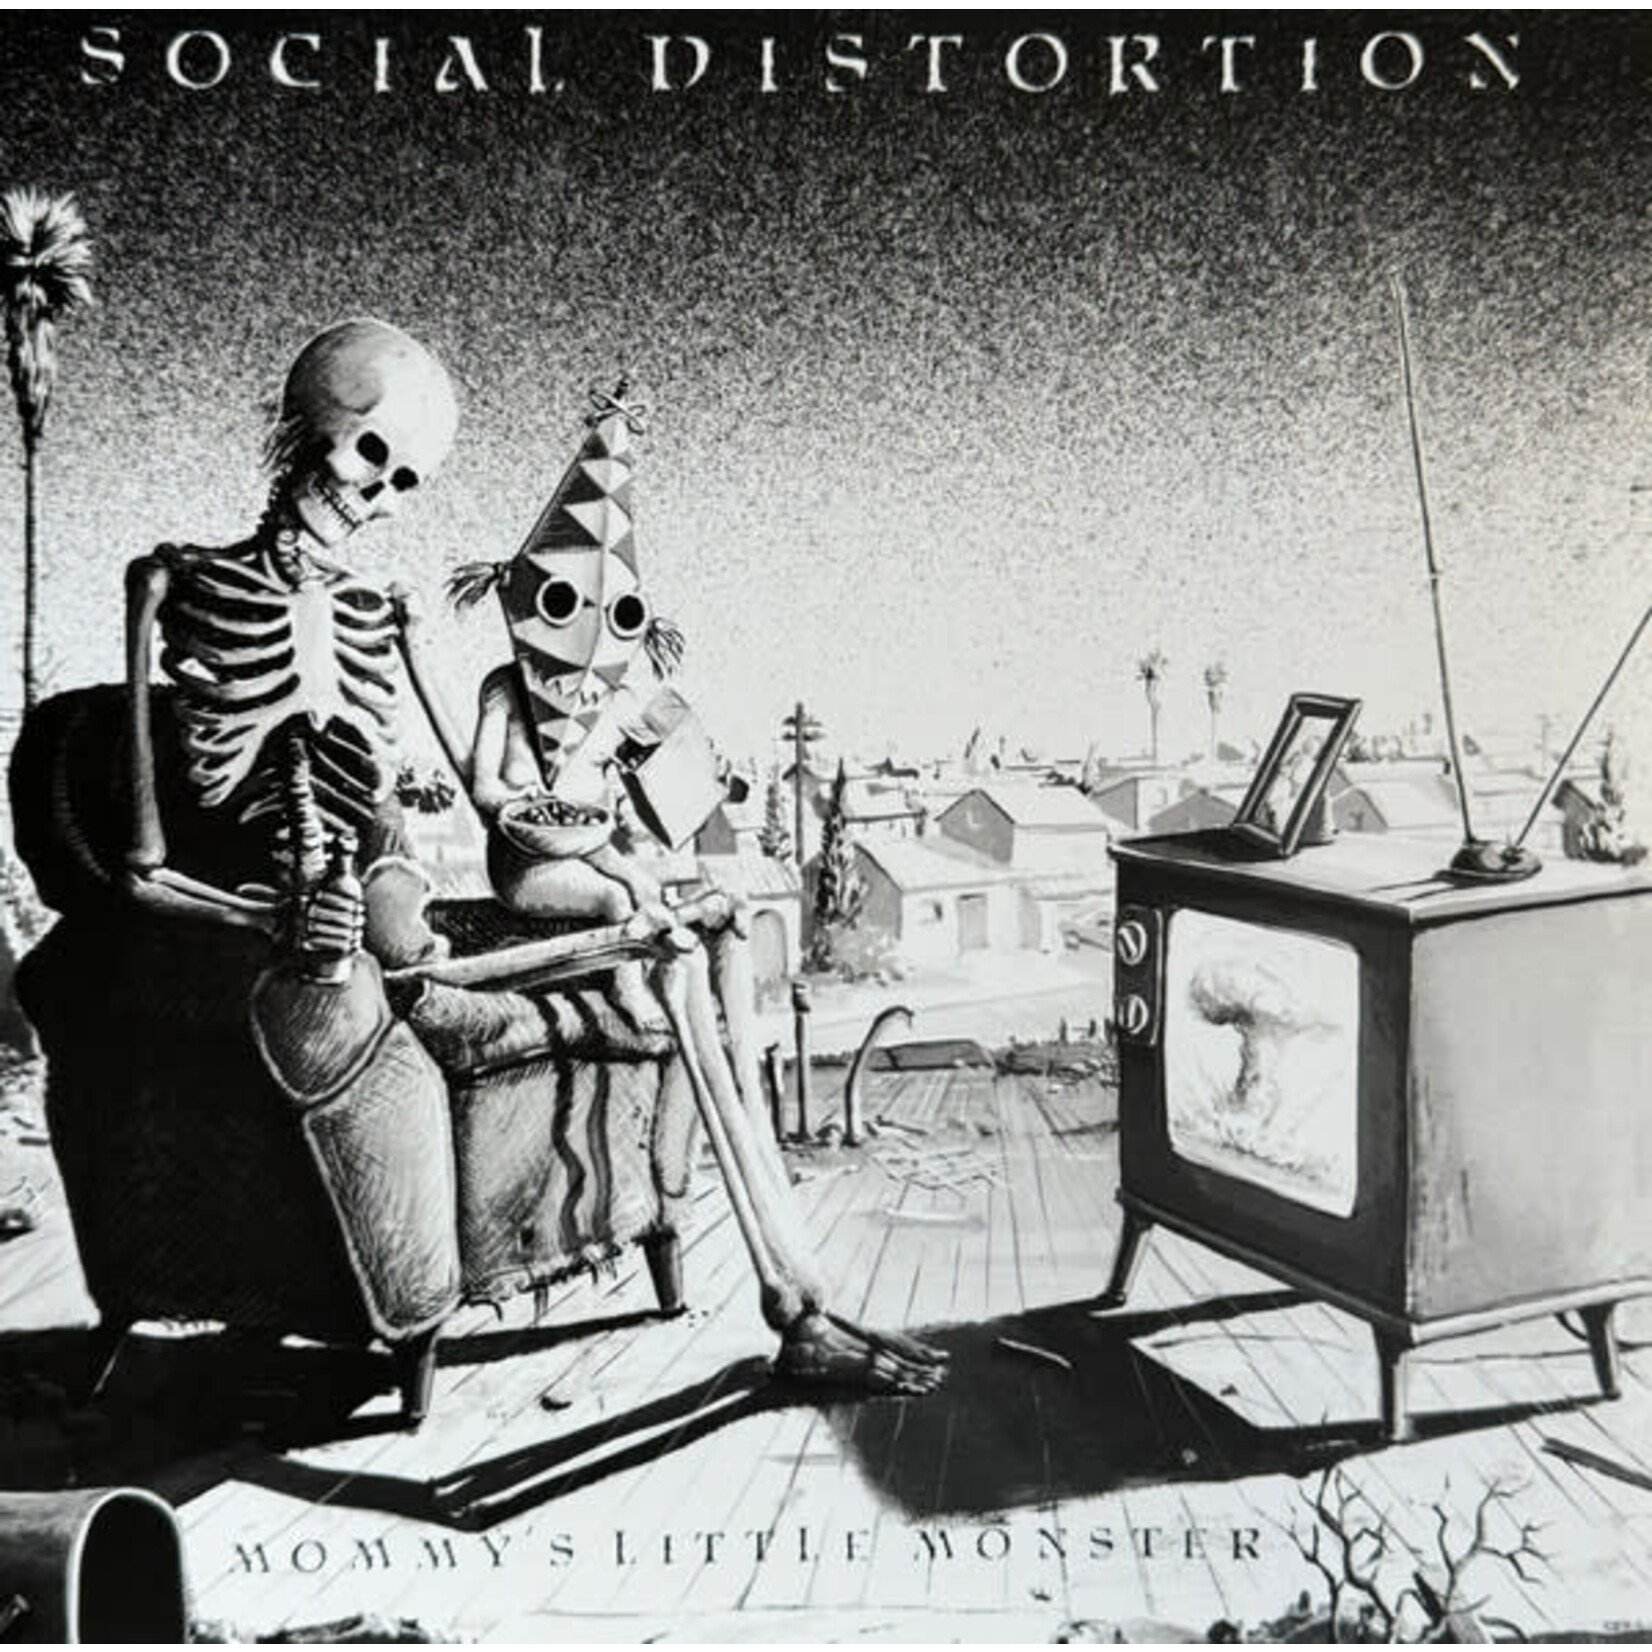 [New] Social Distortion - Mommy's Little Monster (40th Anniversary, black vinyl, 180g, remaster)